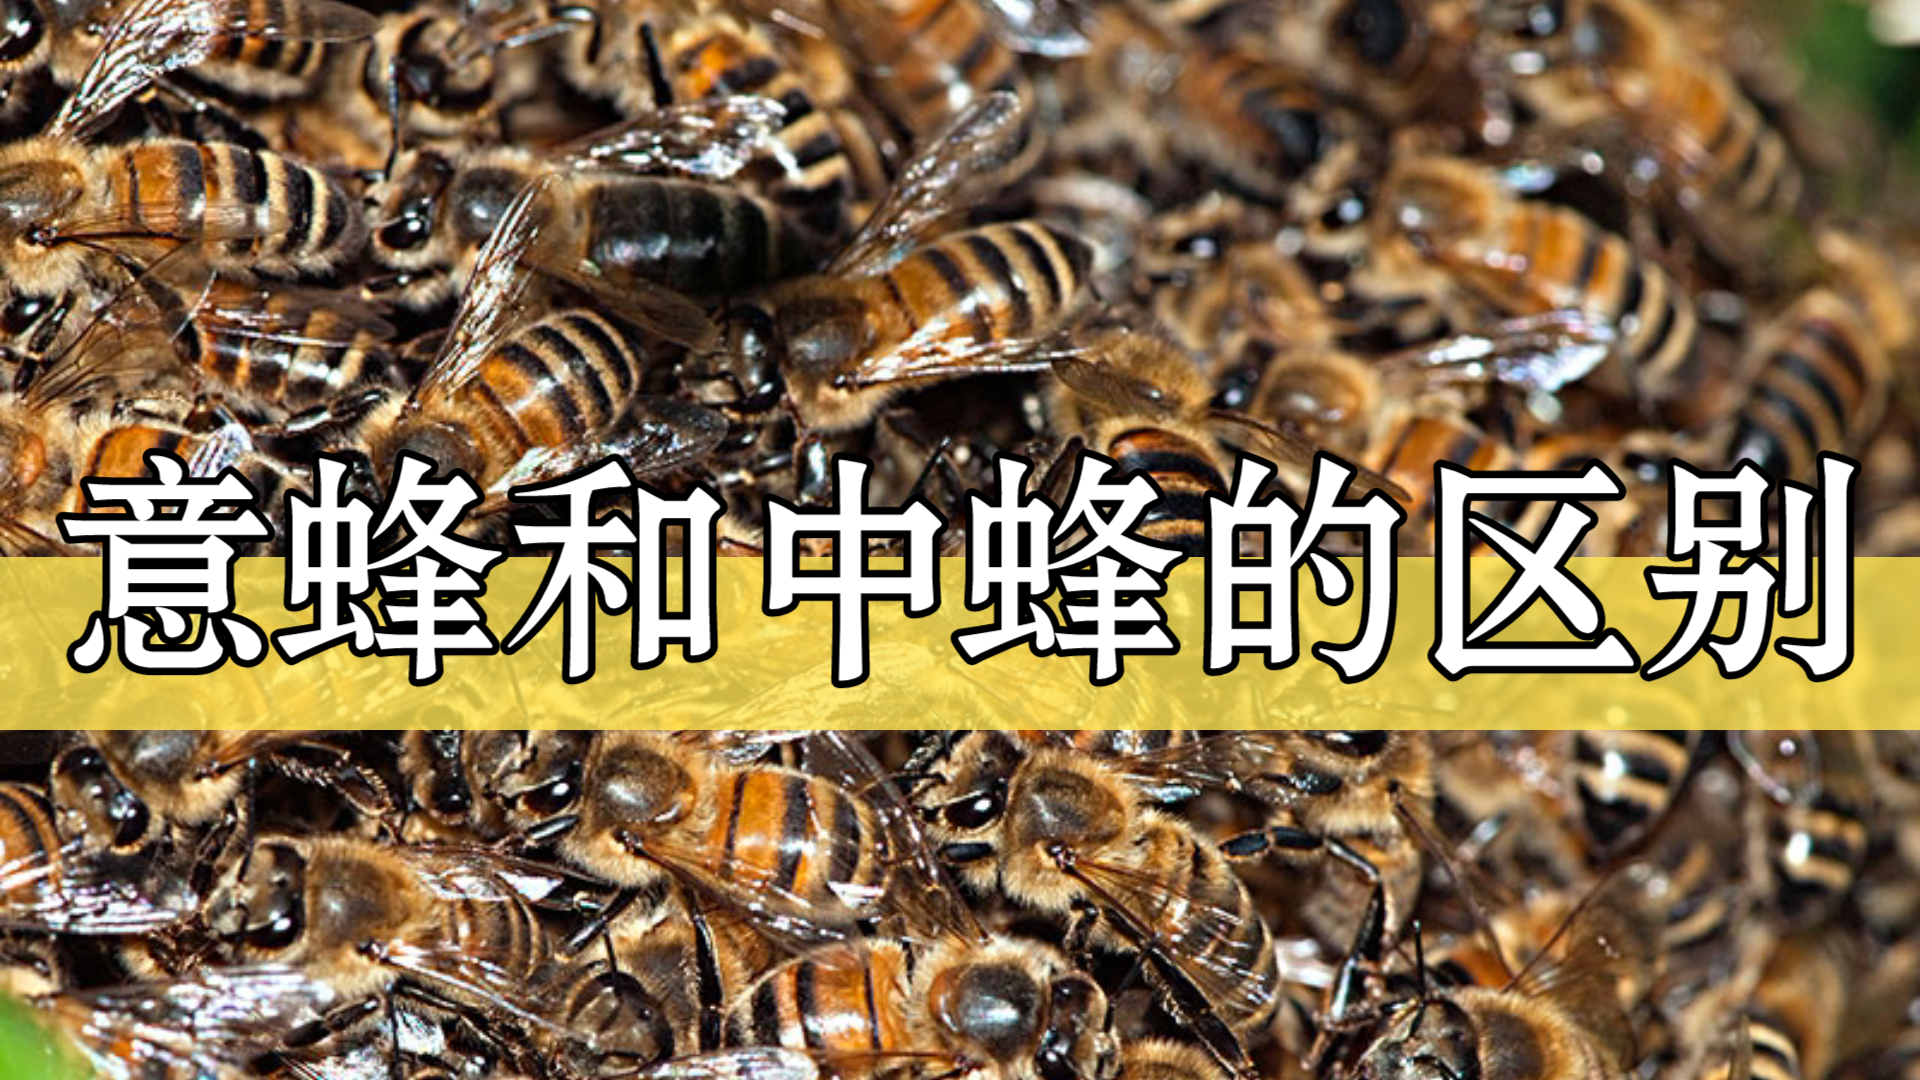 中蜂和意蜂有什么区别图片